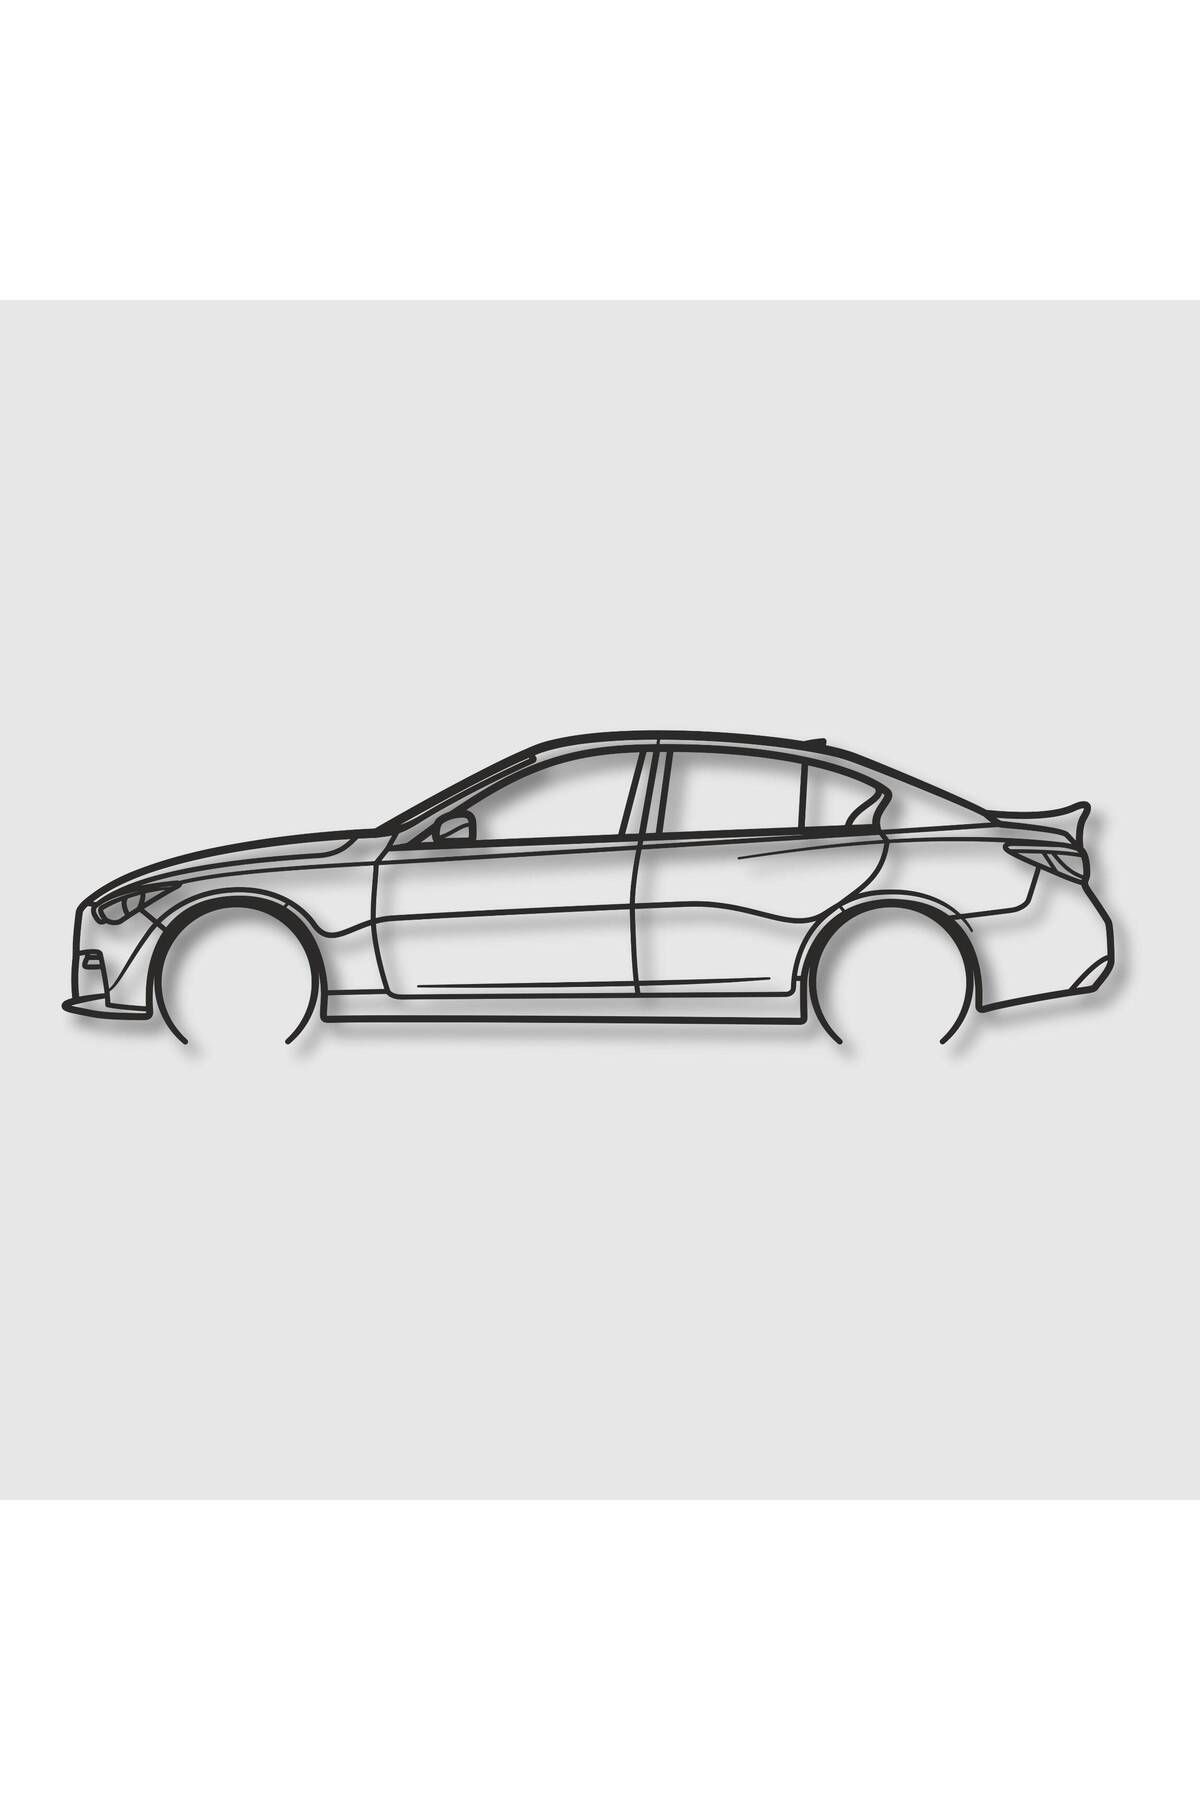 GARA CAR Infiniti Q50 2019 MODEL Metal Araba Dekoru, Araba Modeli Tablo